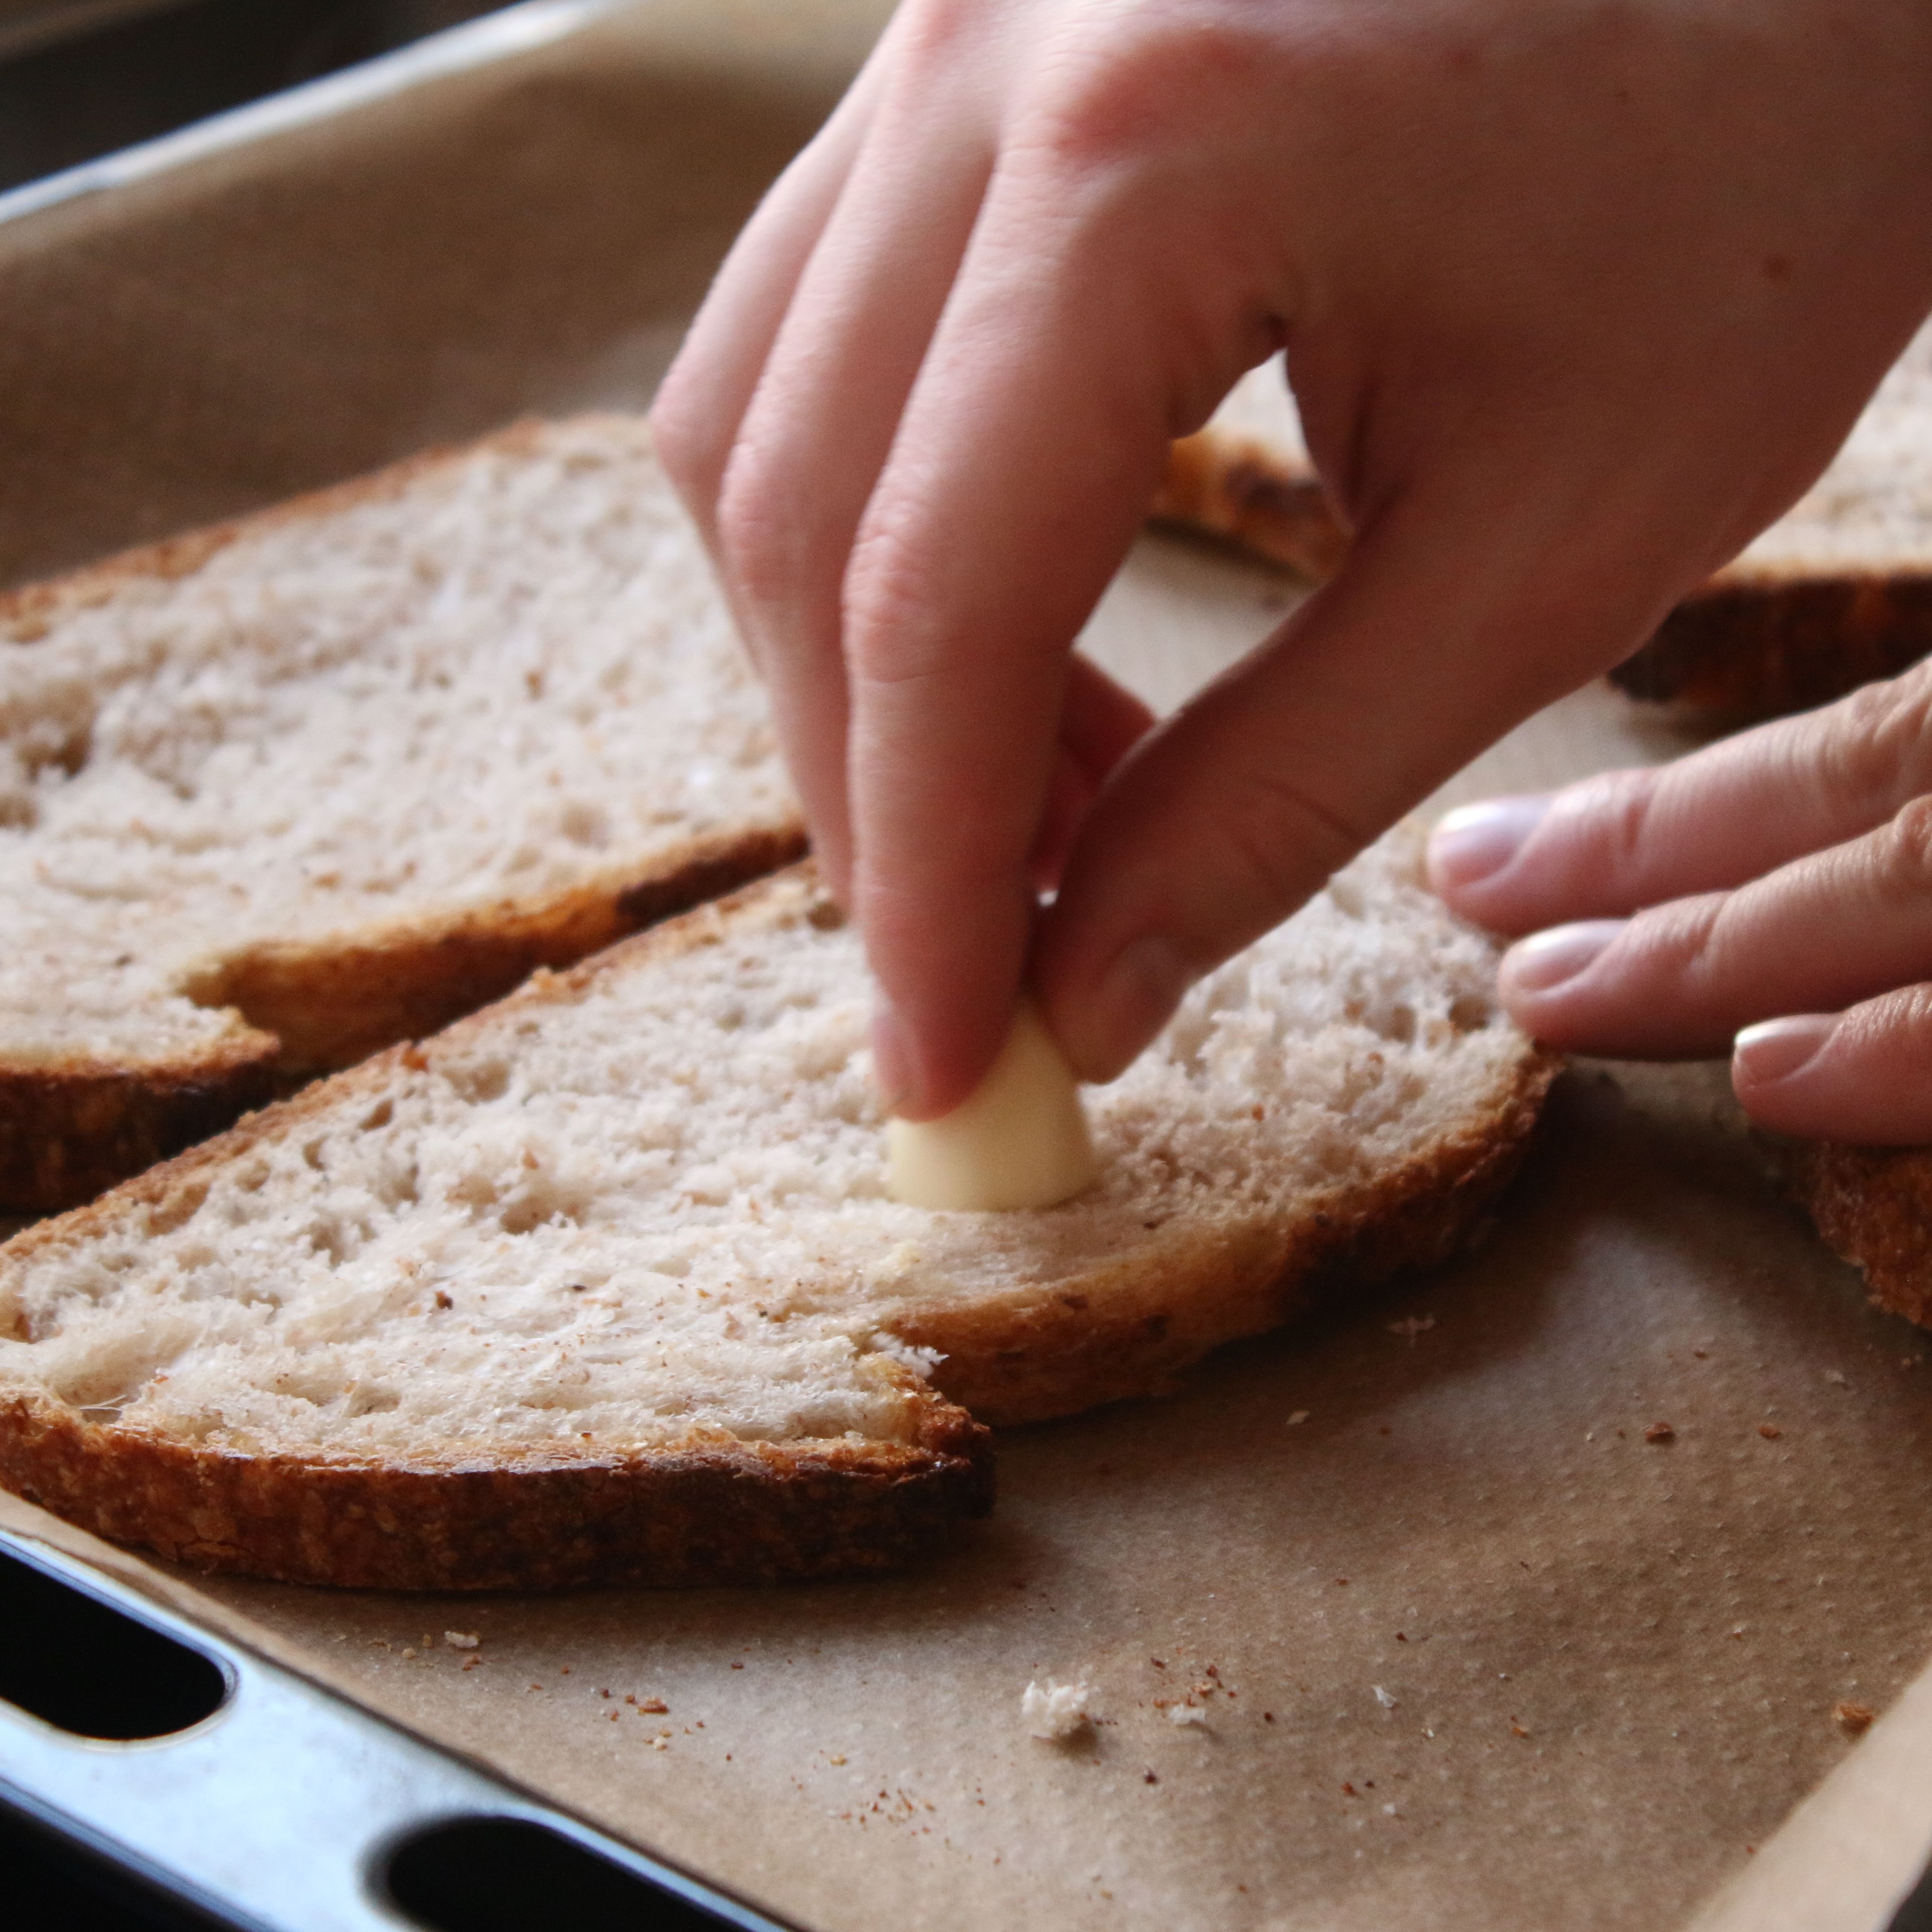 Die Knoblauchzehe halbieren und mit der Schnittseite die Brotscheiben bestreichen. Die Brotscheiben anschließend im Backofen leicht anrösten.